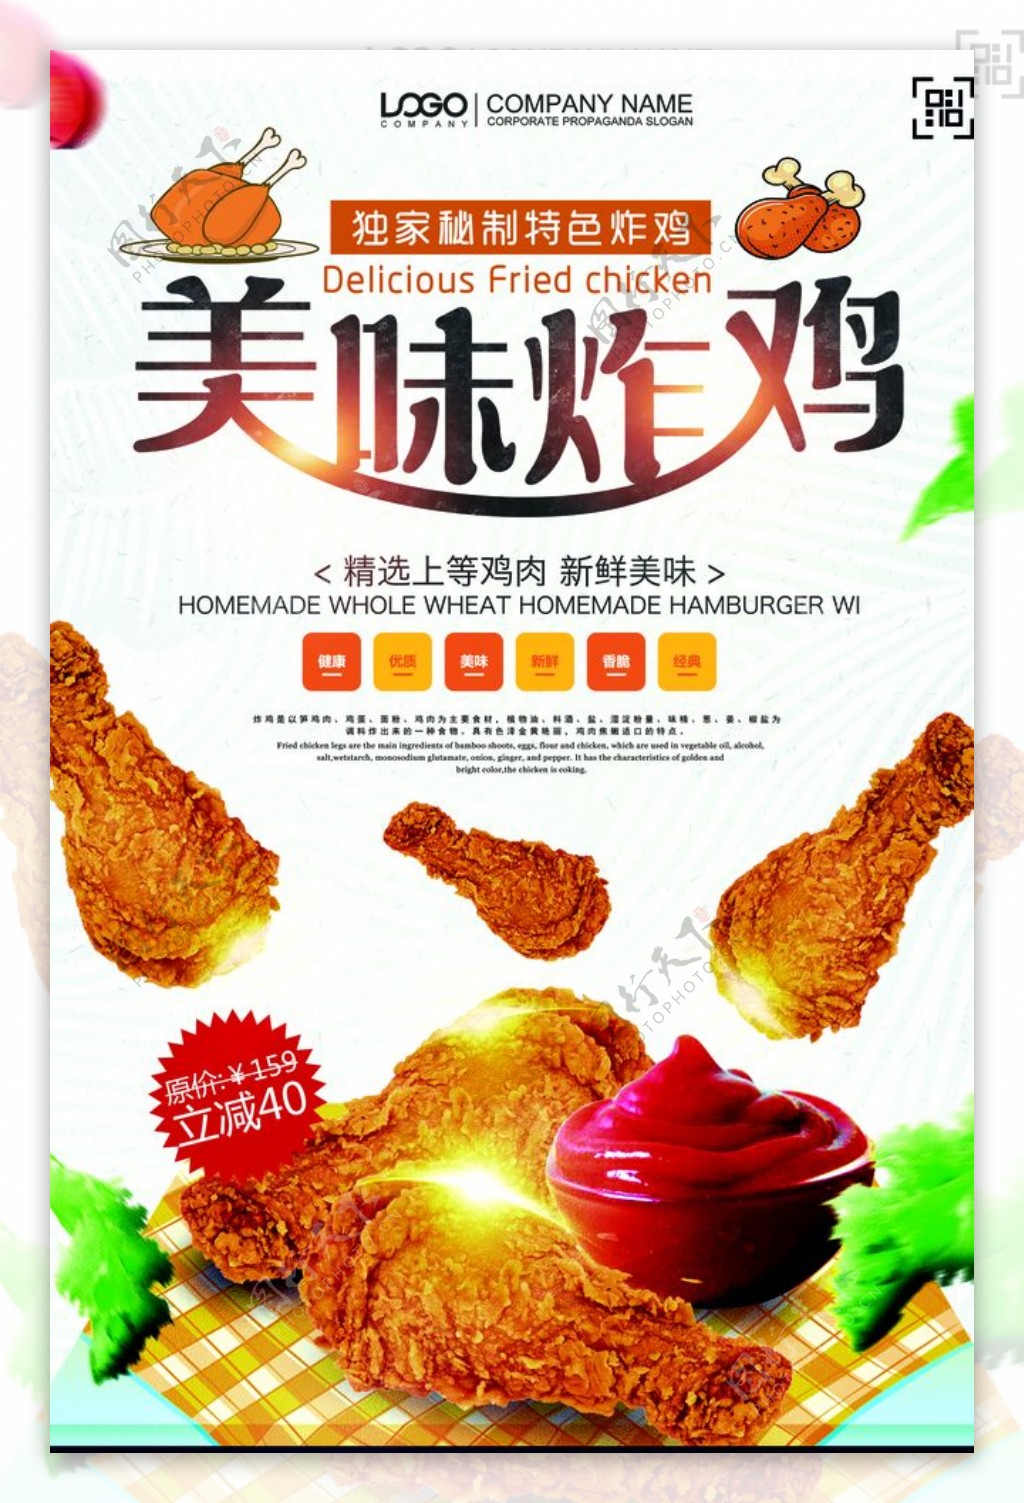 快餐店炸鸡促销海报设计图片